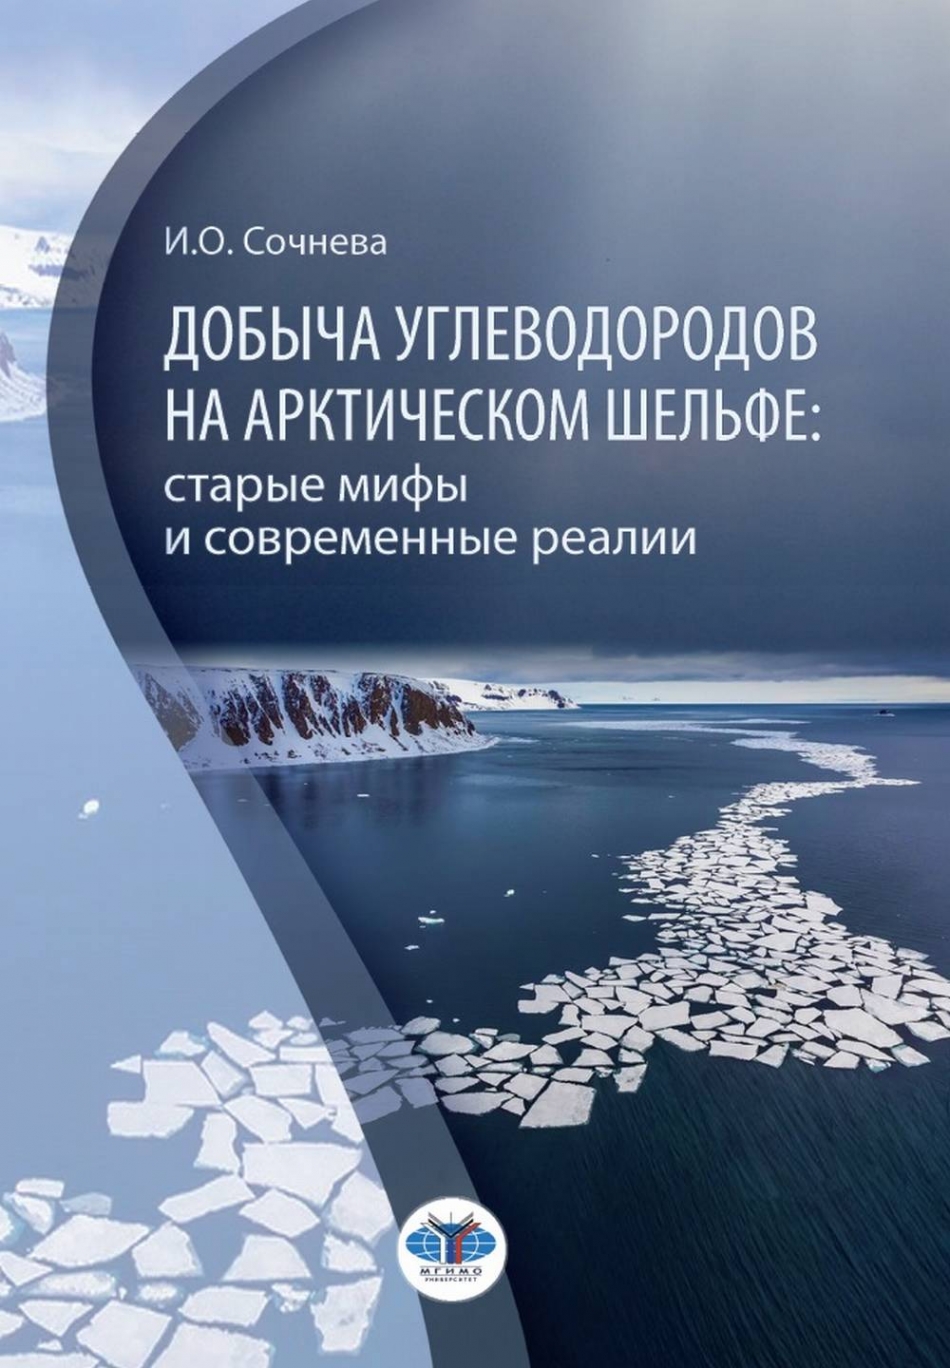 Сочнева И.О. - Добыча углеводородов на арктическом шельфе: старые мифы и современные реалии 